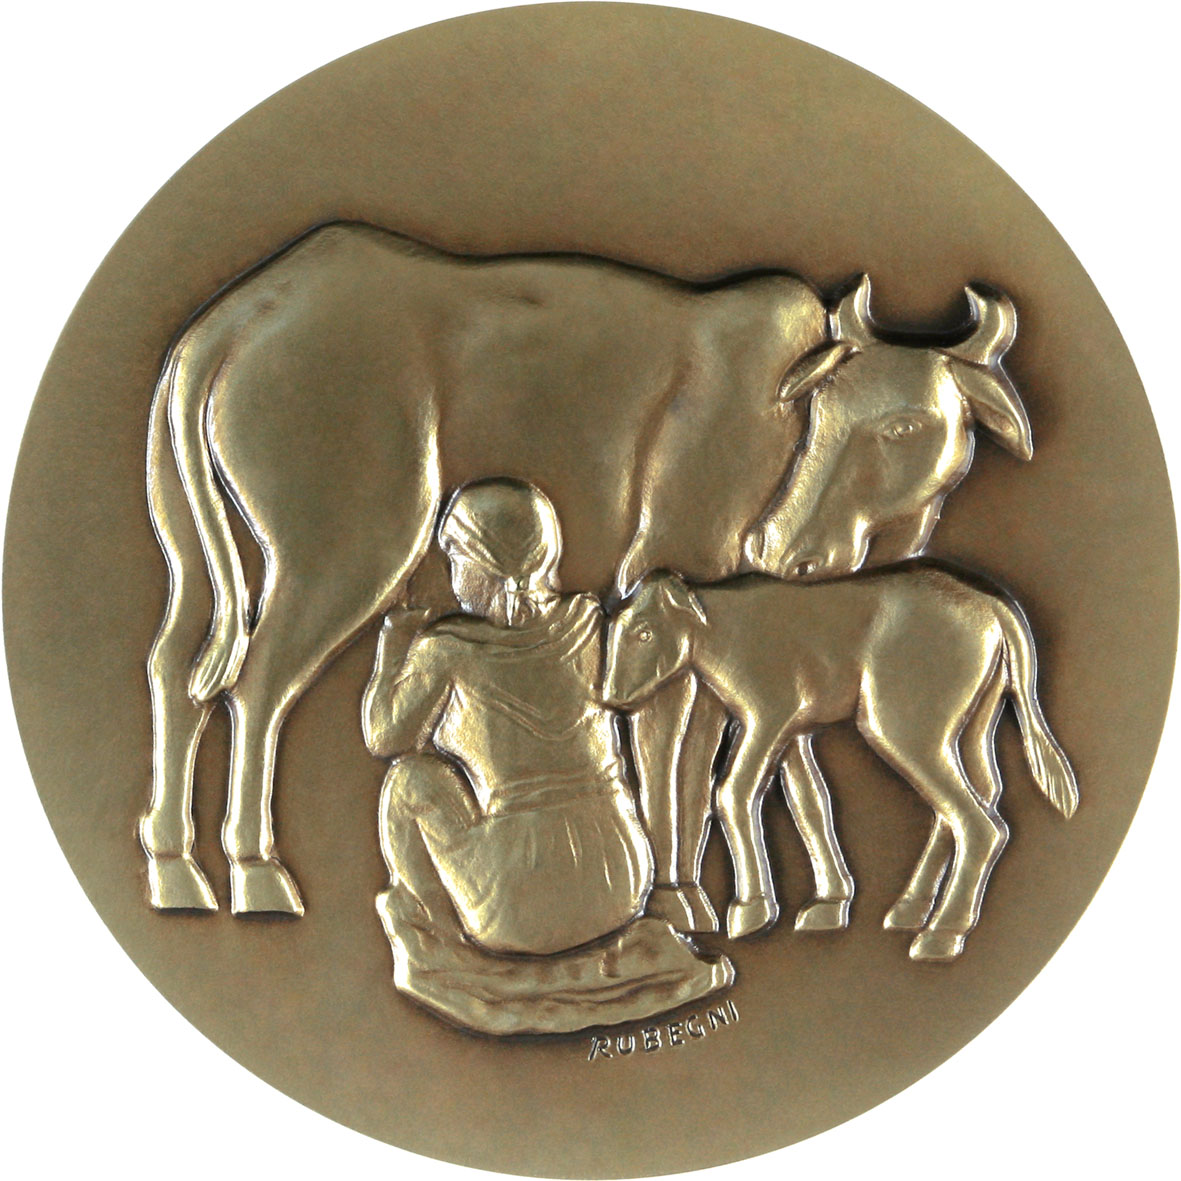 World Food Prize Medal